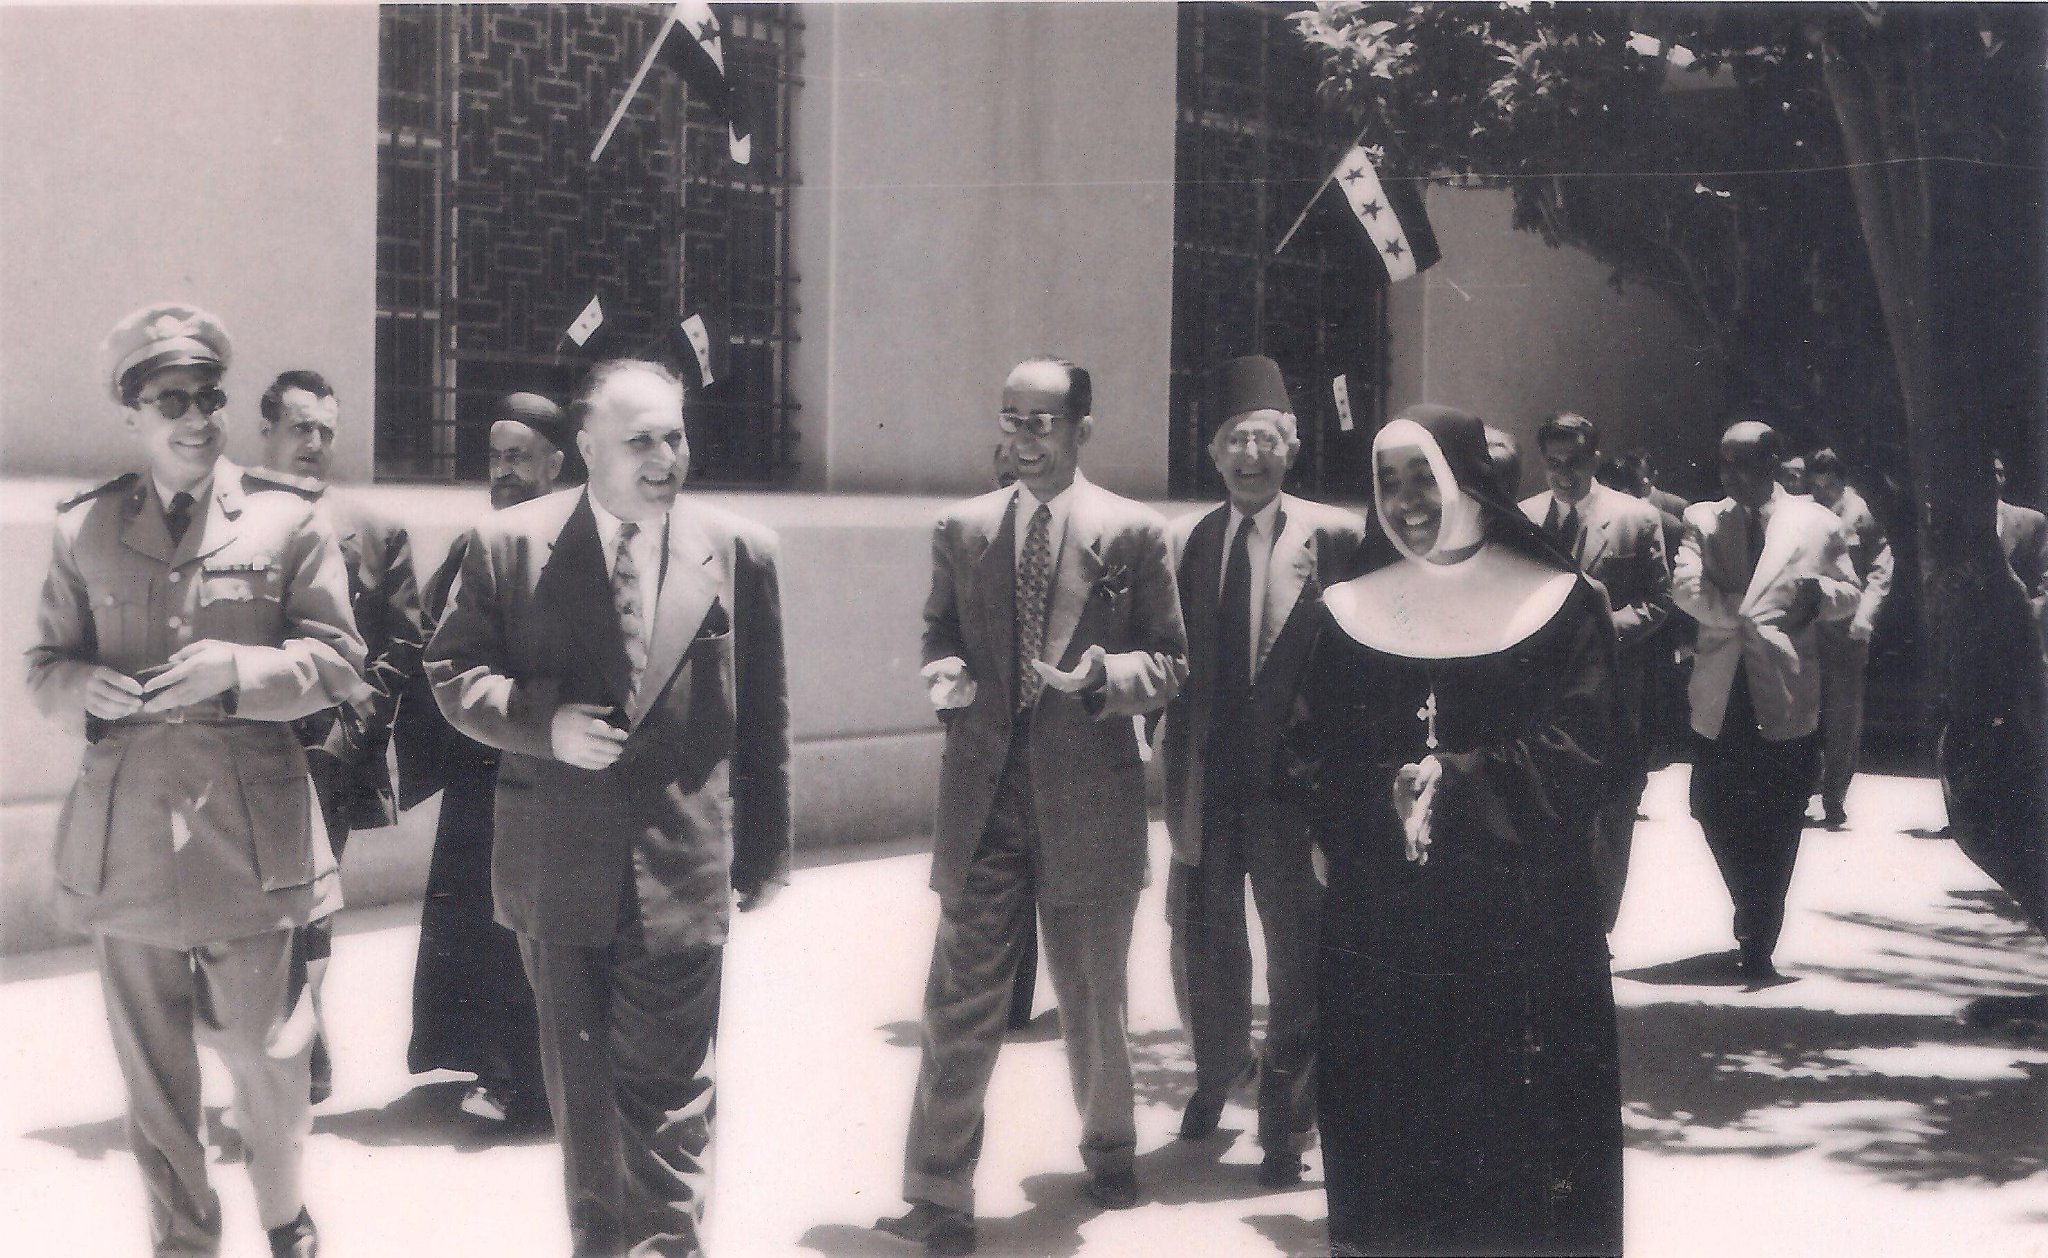 التاريخ السوري المعاصر - مصطفى الحوراني محافظ اللاذقيَّة في مدرسة راهبات العائلة المقدَّسة عام 1956